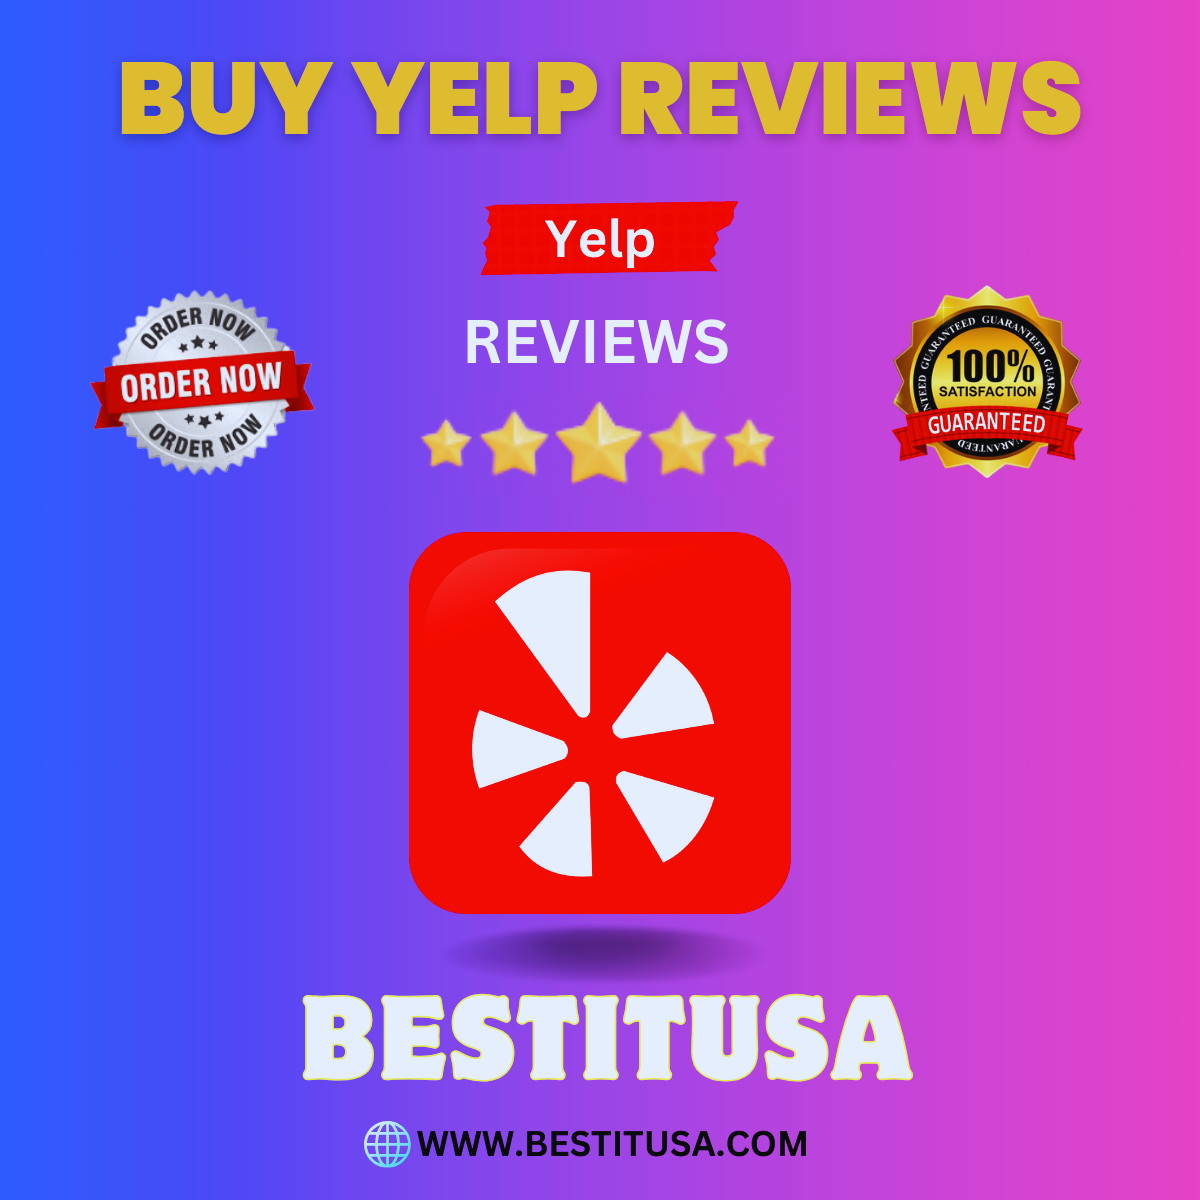 BUY YELP REVIEWS - BestItUsa